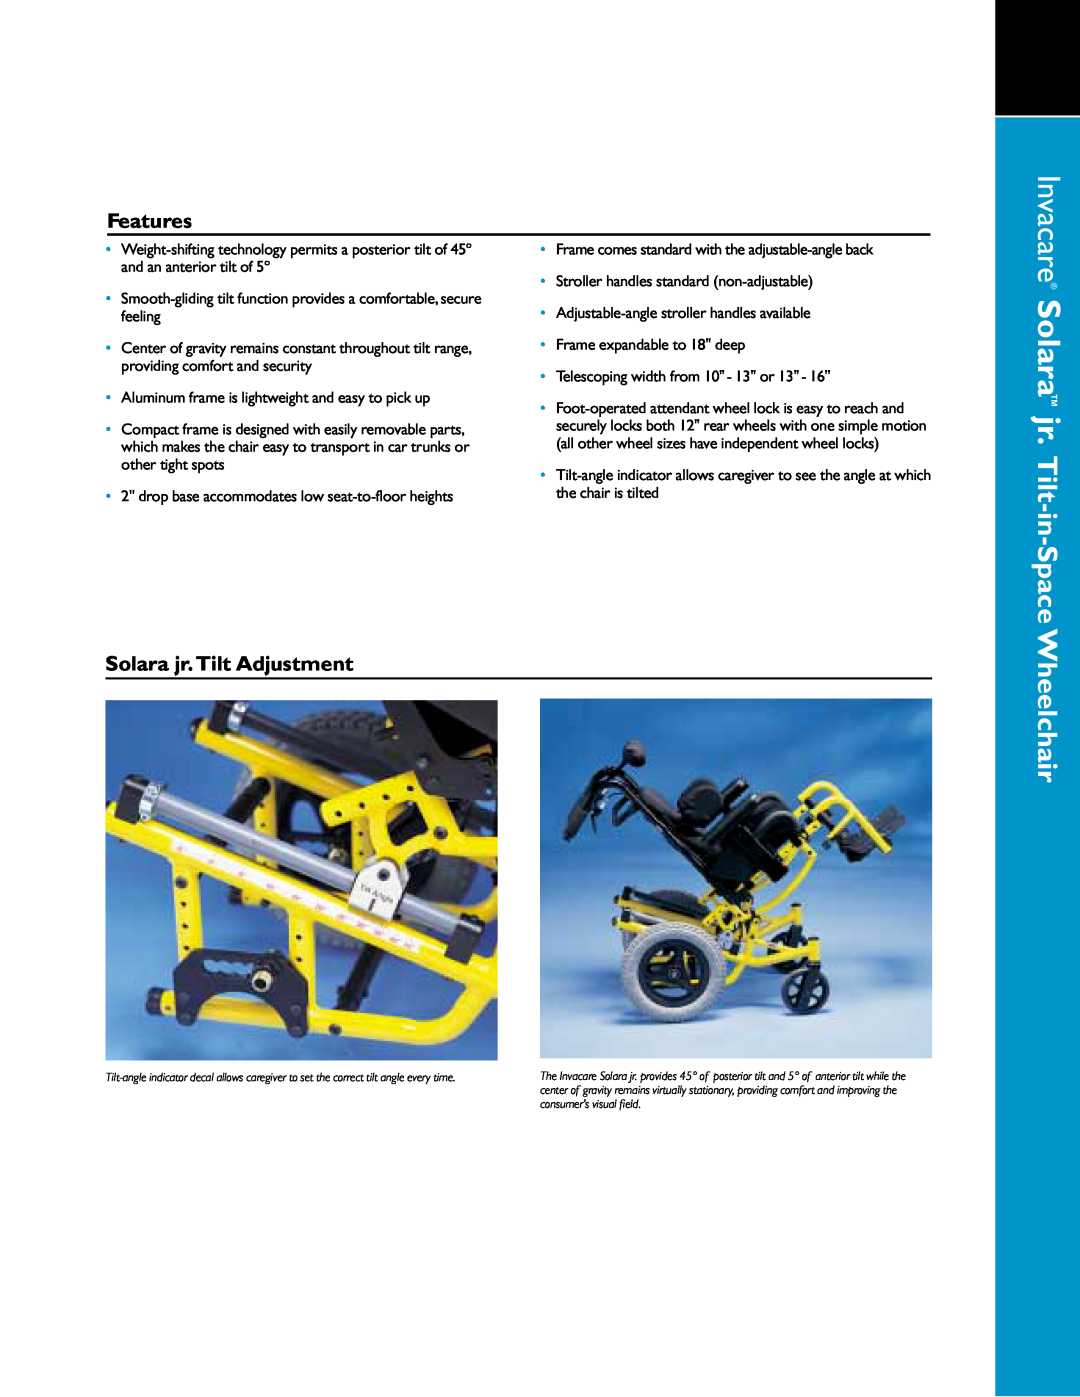 Invacare 01-349 manual Solara jr. Tilt-in-Space, Wheelchair, Features, Solara jr. Tilt Adjustment, Invacare 